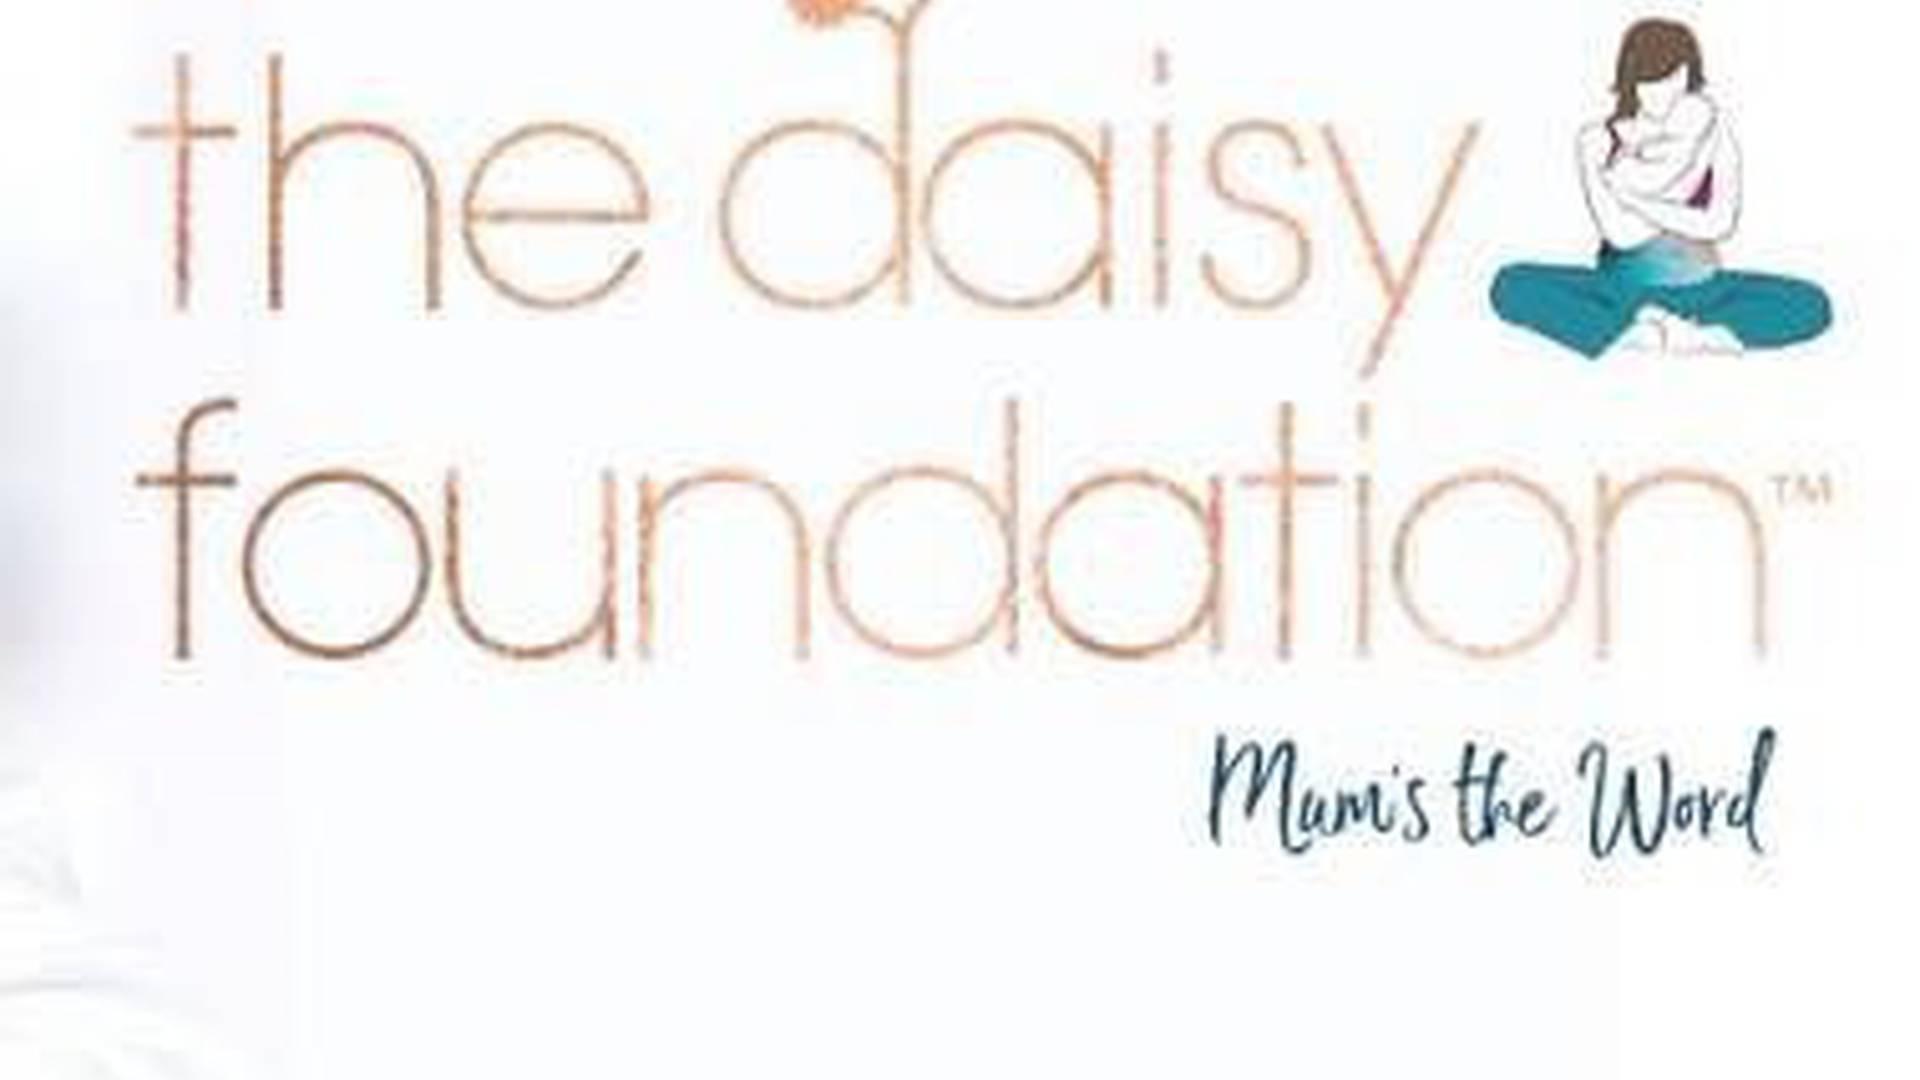 The Daisy Foundation photo